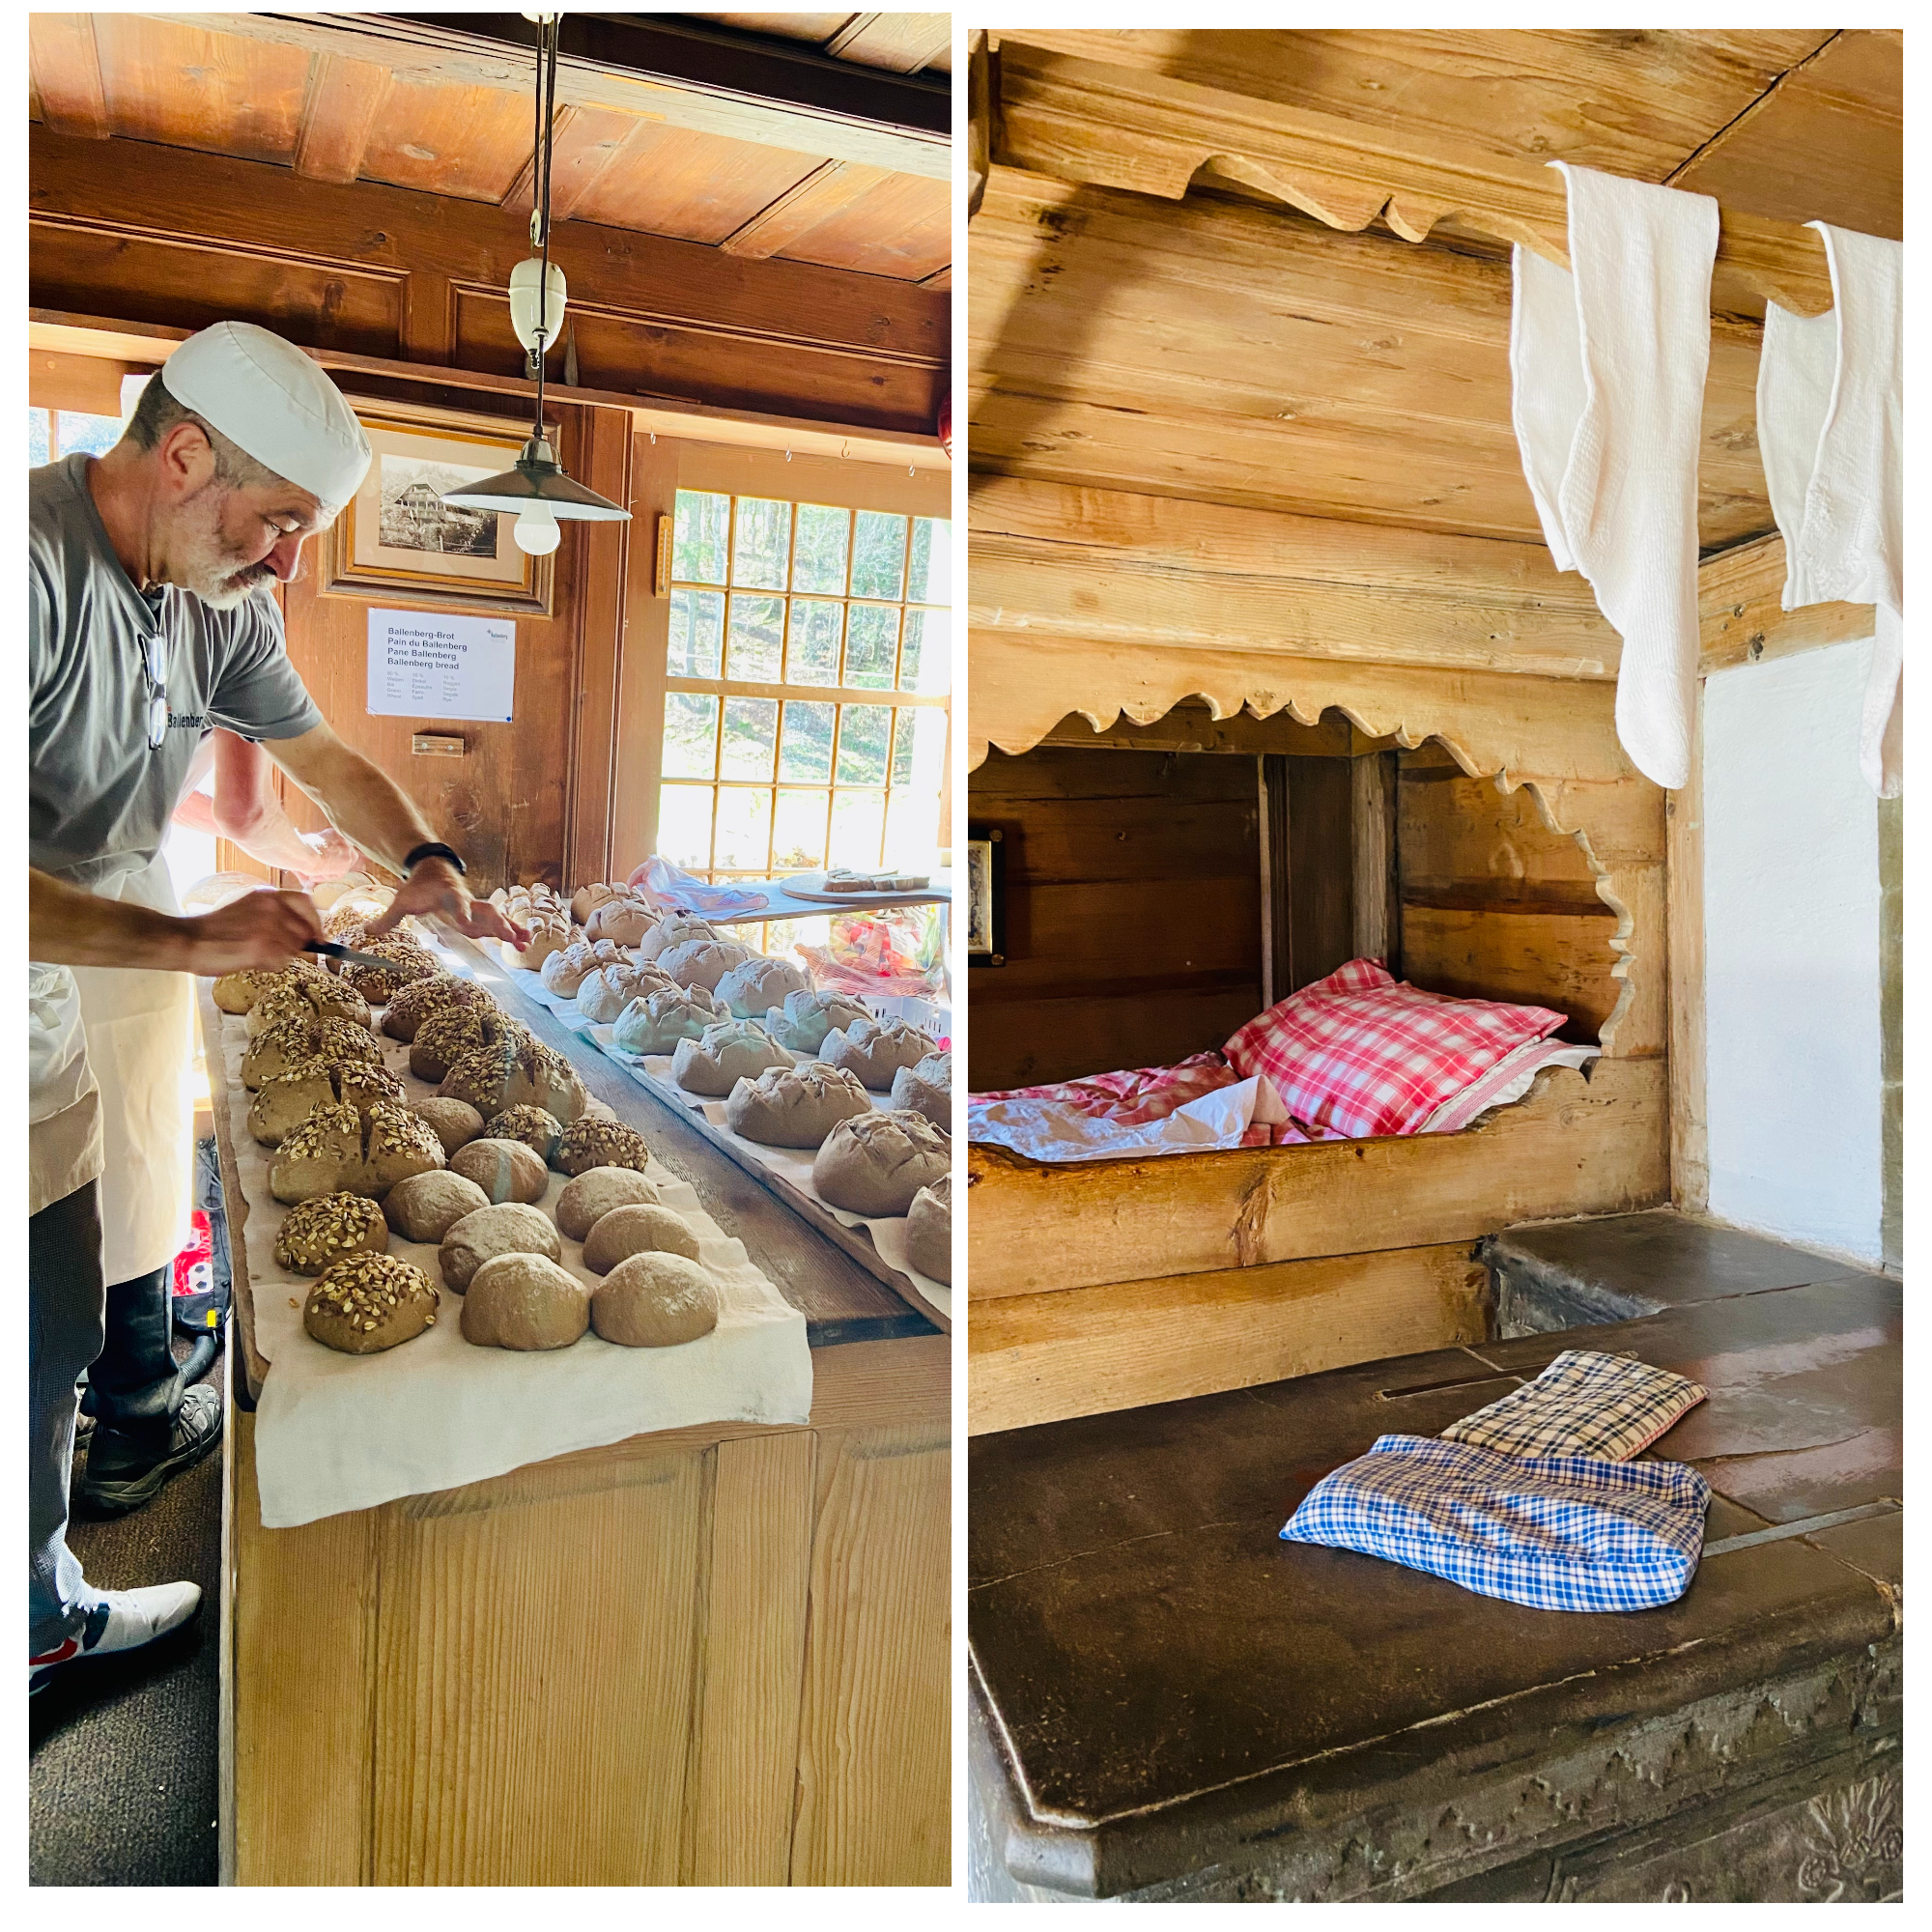 παραδοσιακό ψωμί φούρνος σπίτια χωριό brienz bellenberg